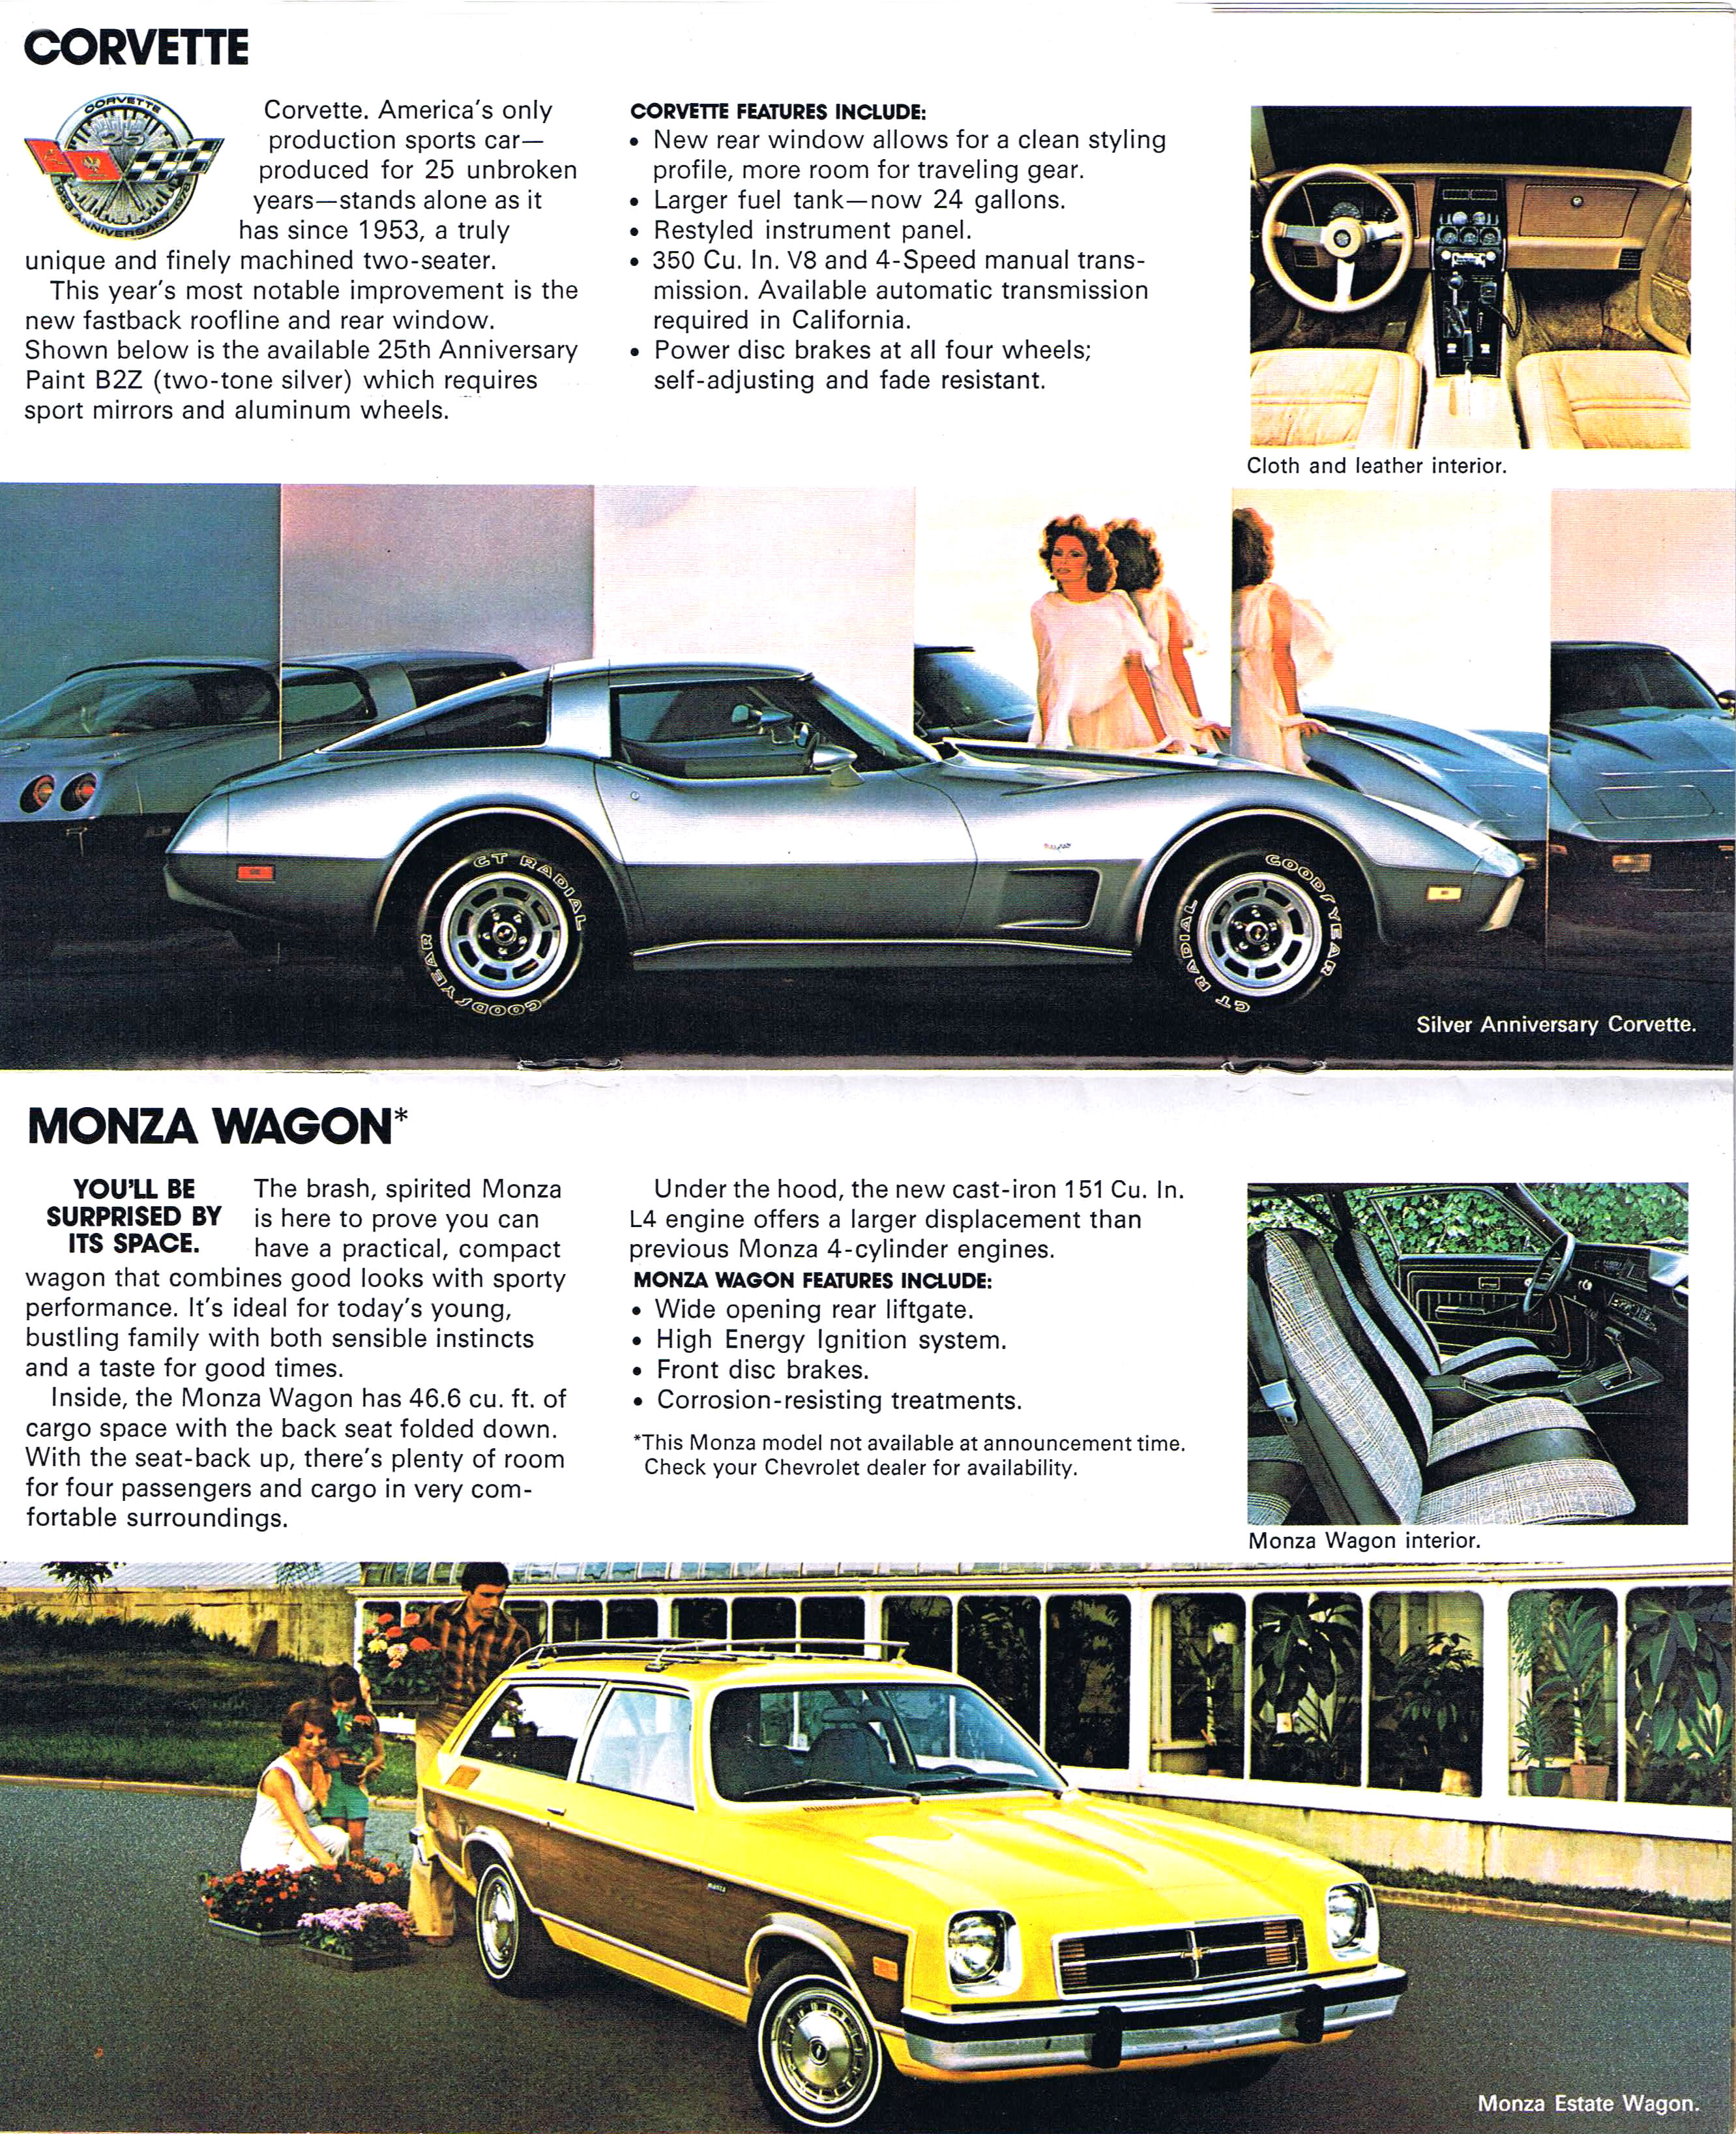 1978_Chevrolet_Full_Line-12-13